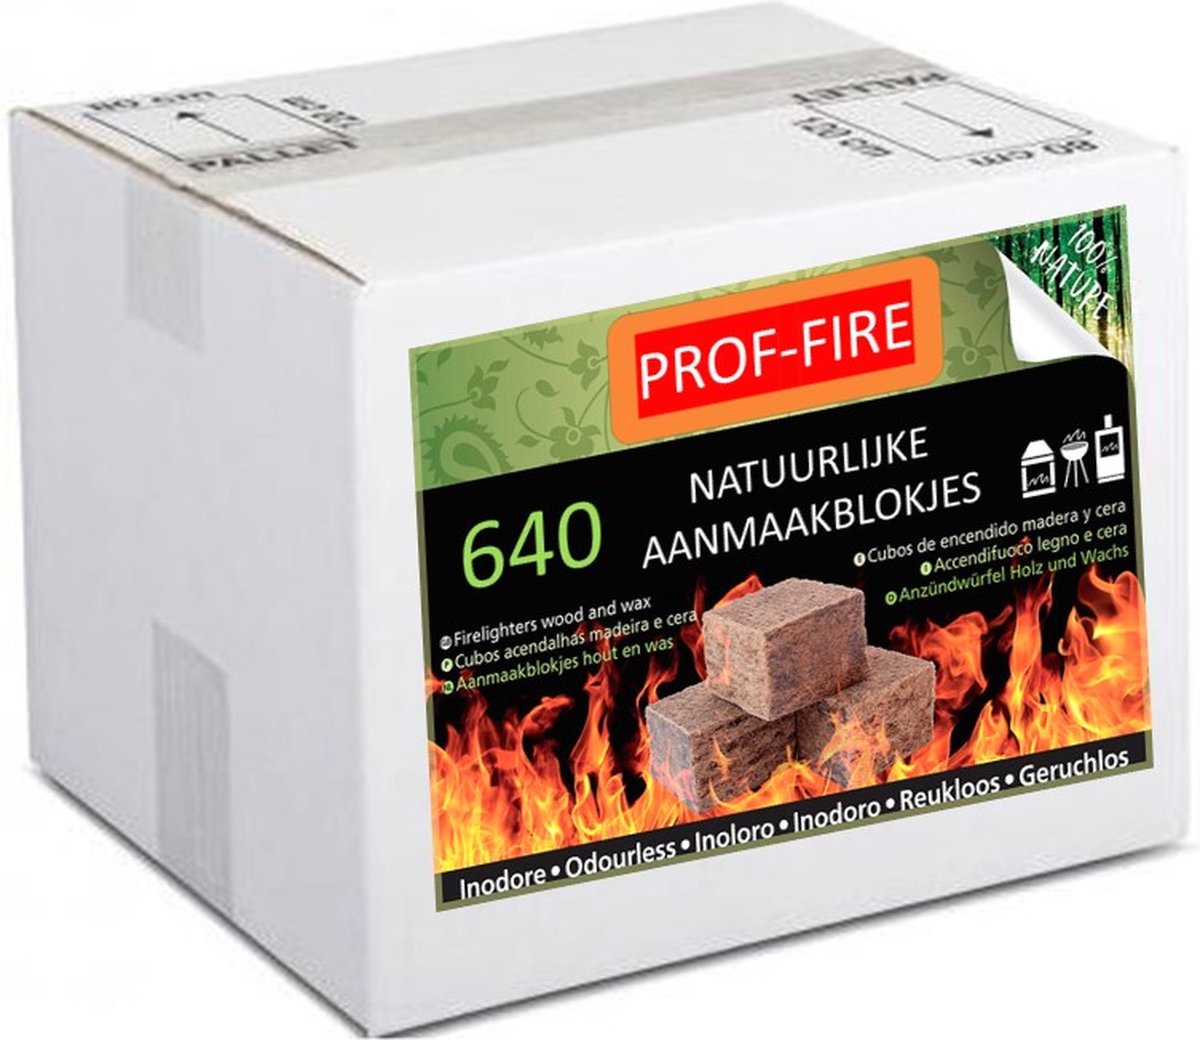 Prof-Fire - 640 Aanmaakblokjes - Voordeeldoos - Ecologisch - Milieuvriendelijk - Reukloos - CO2 Neutraal - Fire Up kwaliteit